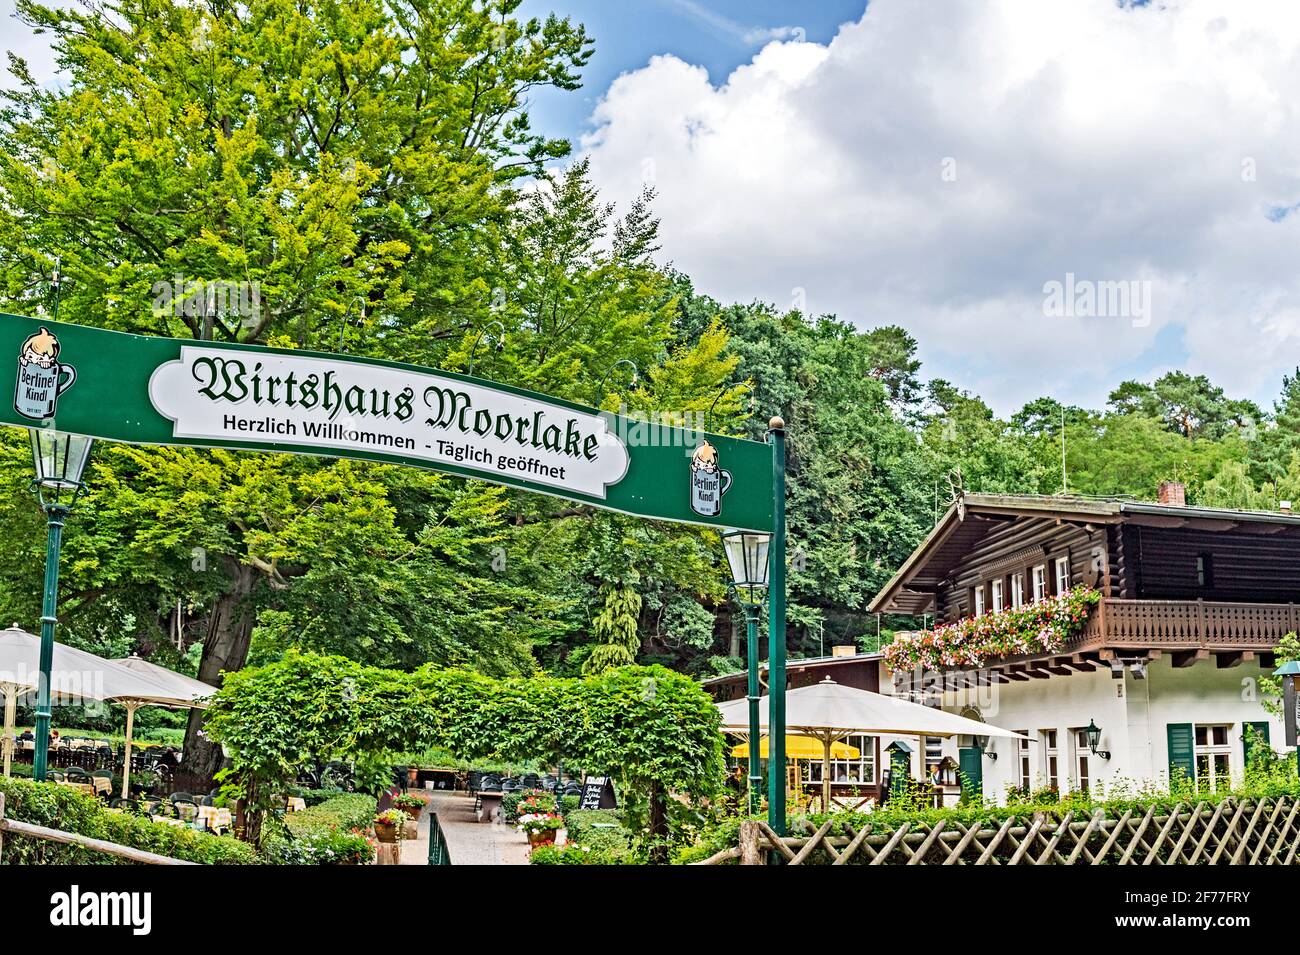 Berlín: Restaurante Moorlake cerca del río Havel en el Grunewald, un bosque en el suroeste de la ciudad Foto de stock